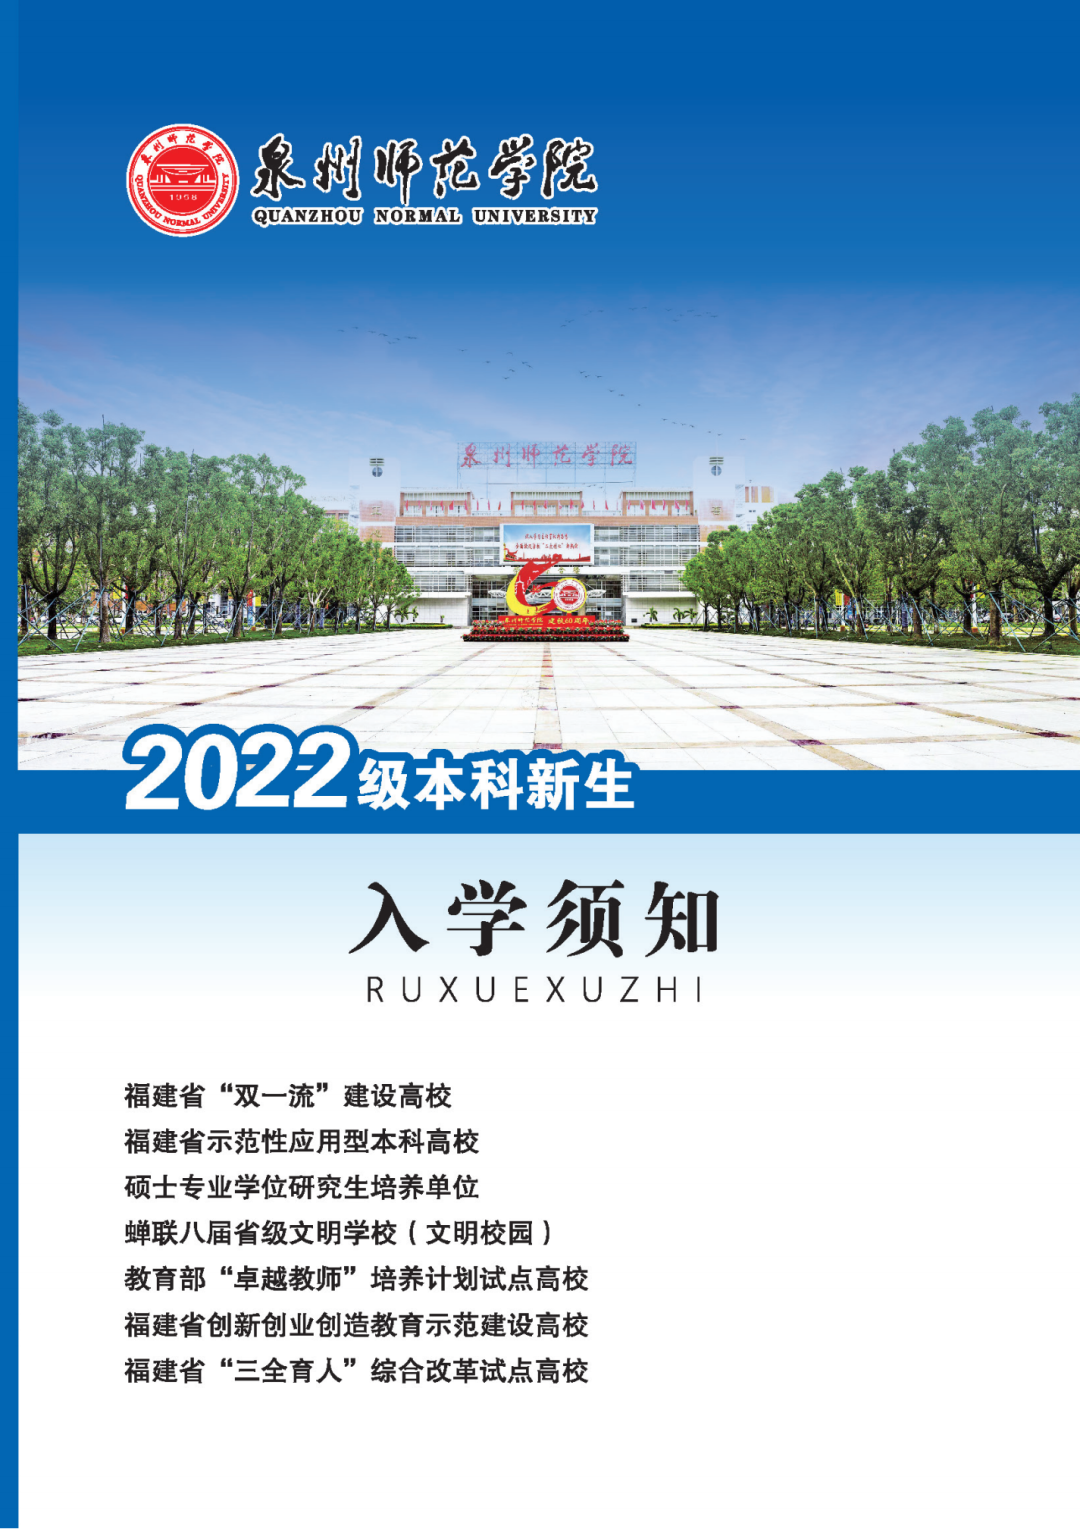 泉州师范学院 Quanzhou Normal University – Merdeka Education Centre